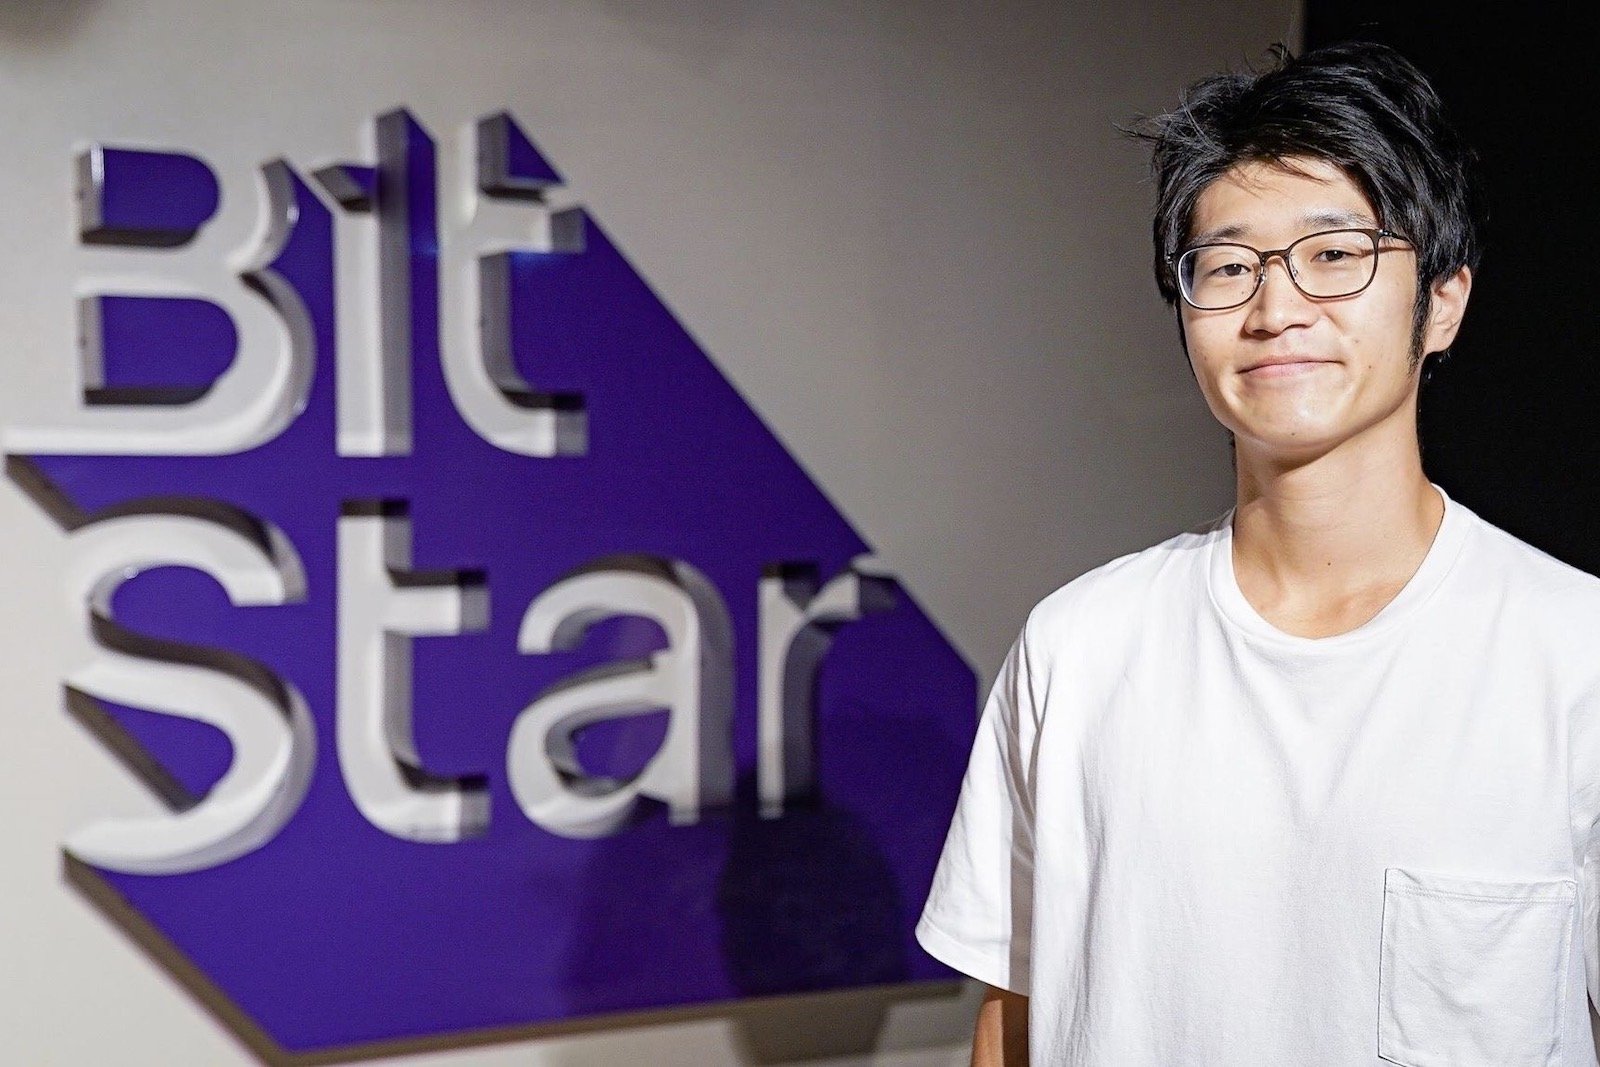 インフルエンサー事業のBitStarが10億円の資金調達、事業会社との連携を強化